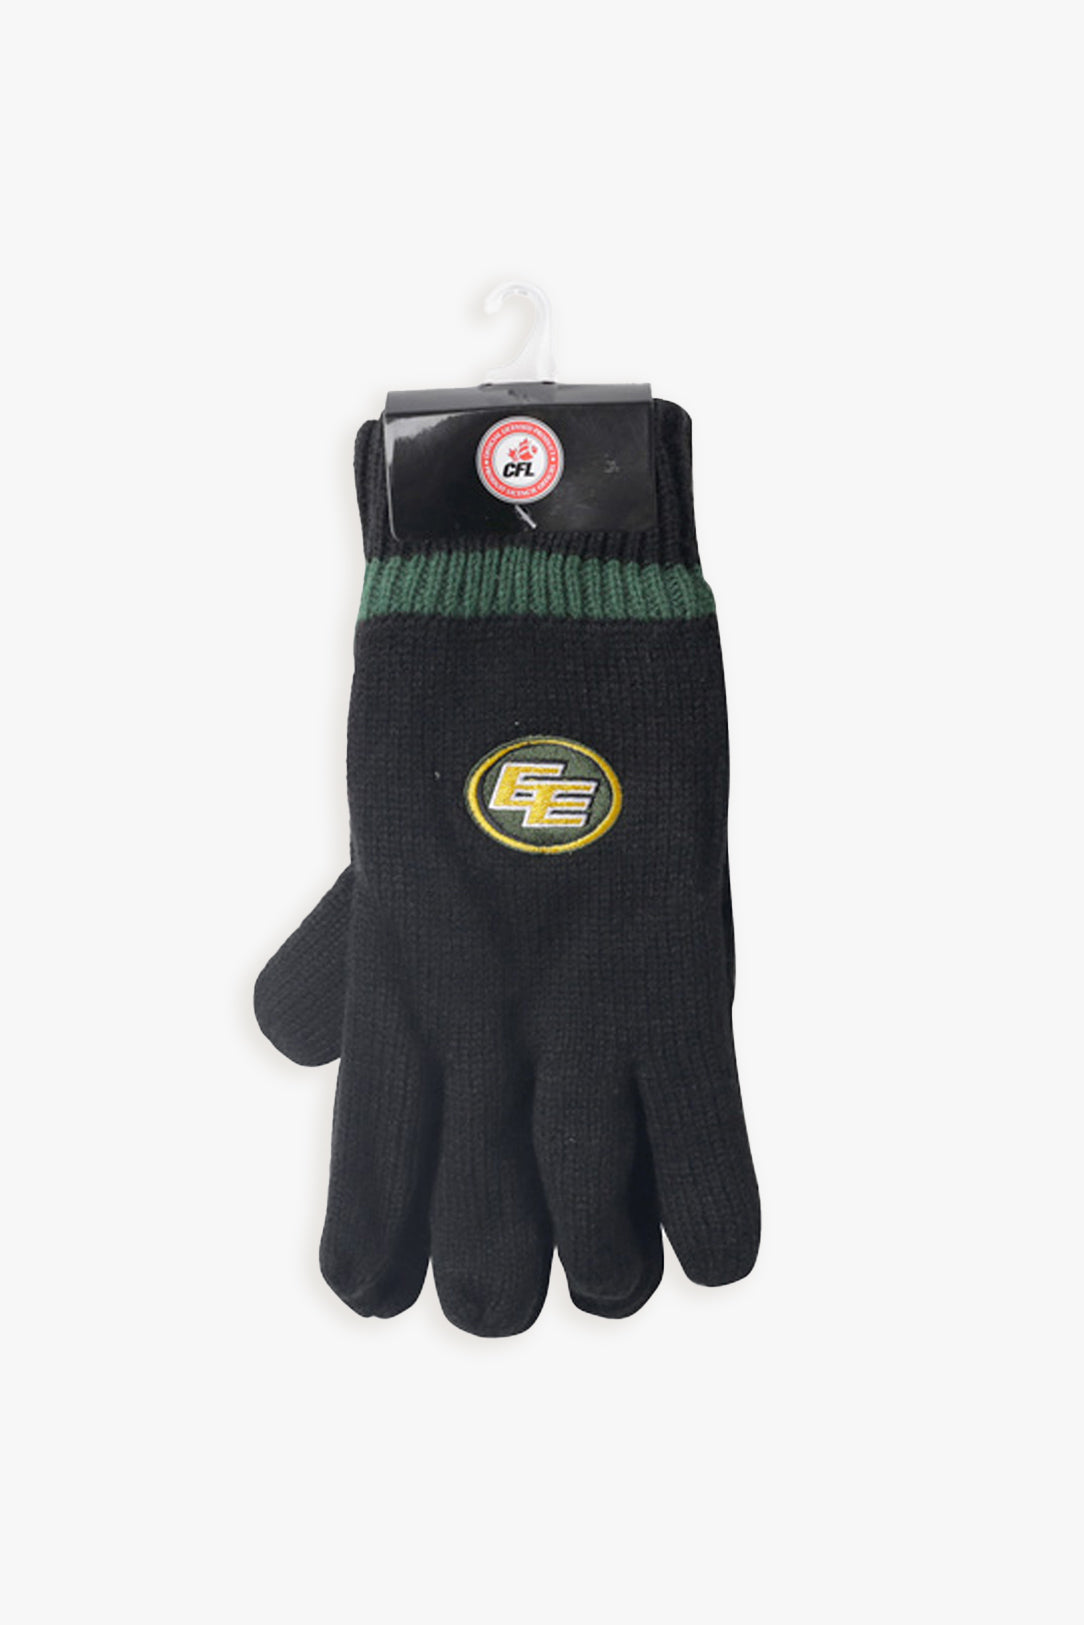 Gertex CFL Edmonton Eskimos Insulated Men's Adult Gloves